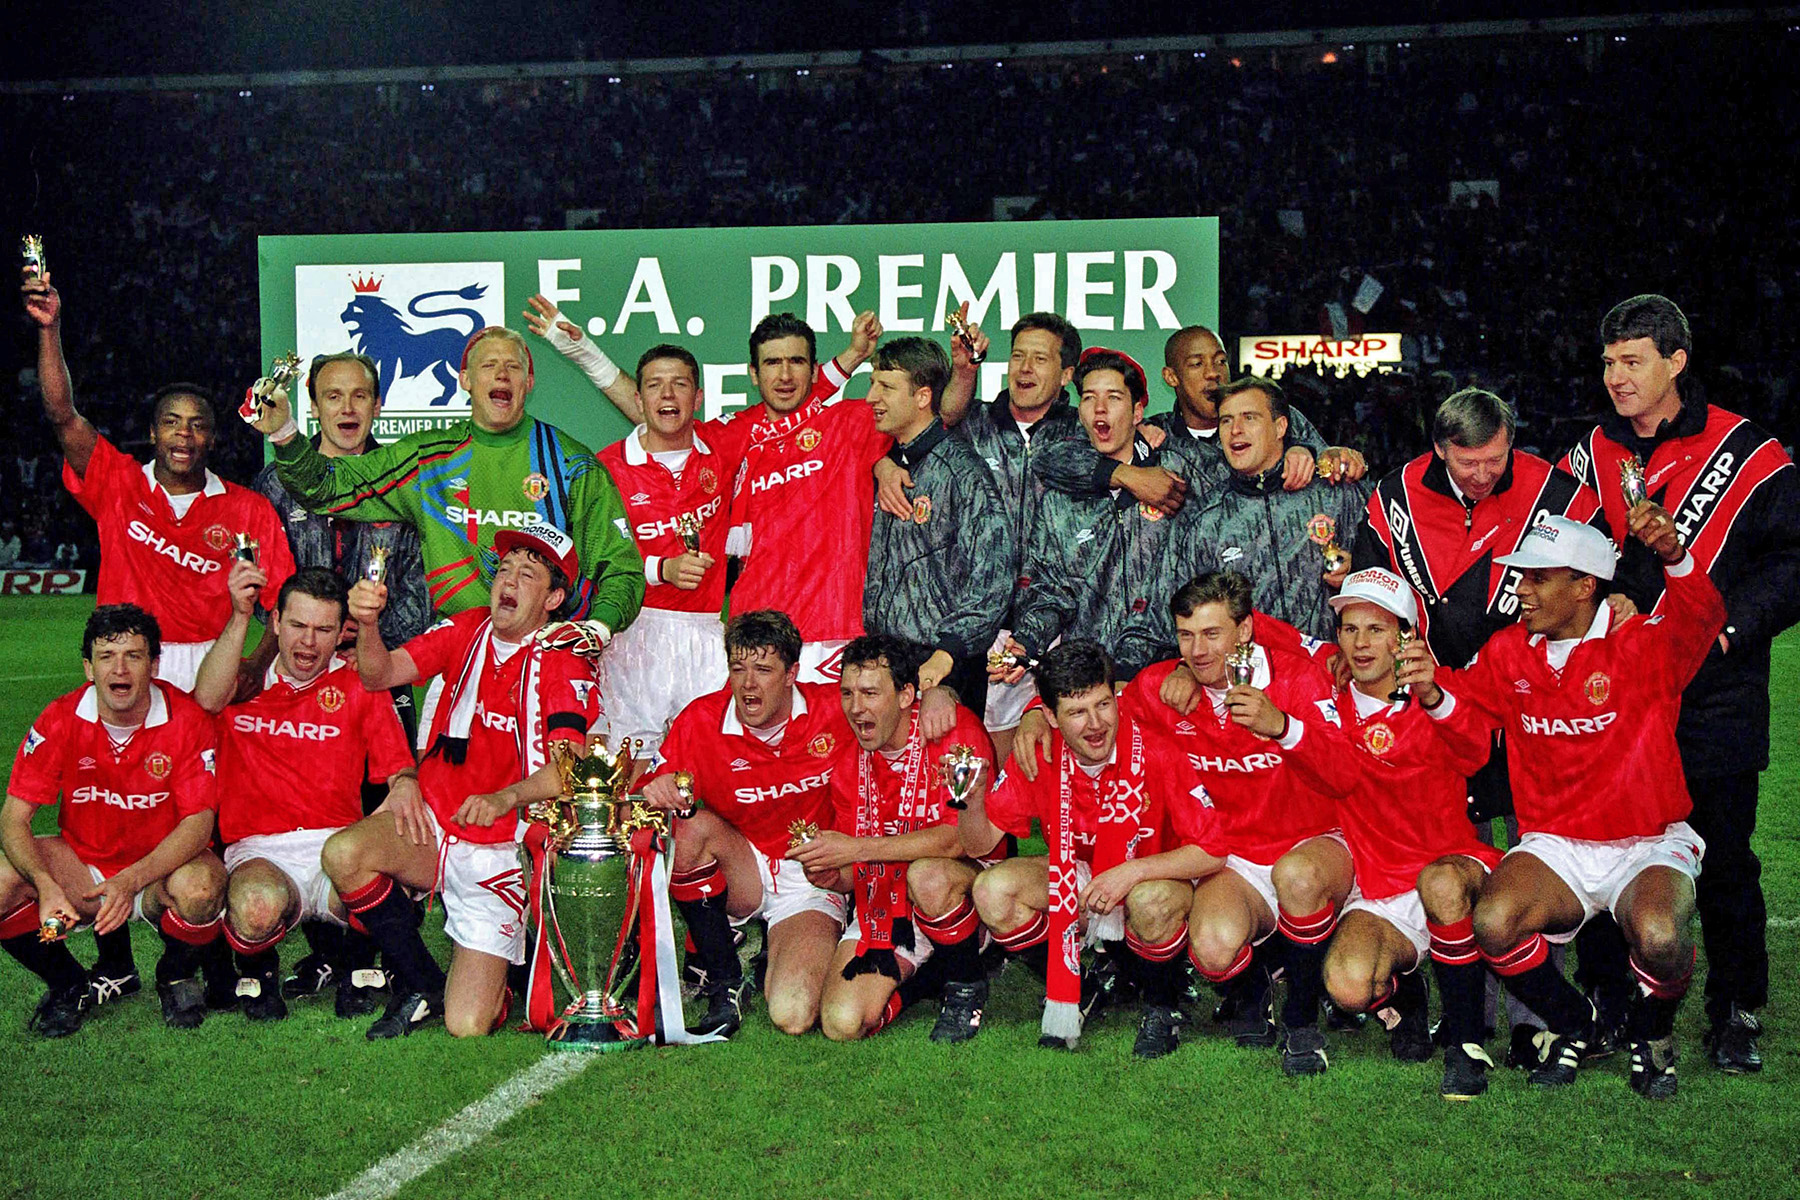 Manchester United - Vainqueur de la Premier League 1992-1993 (première saison)